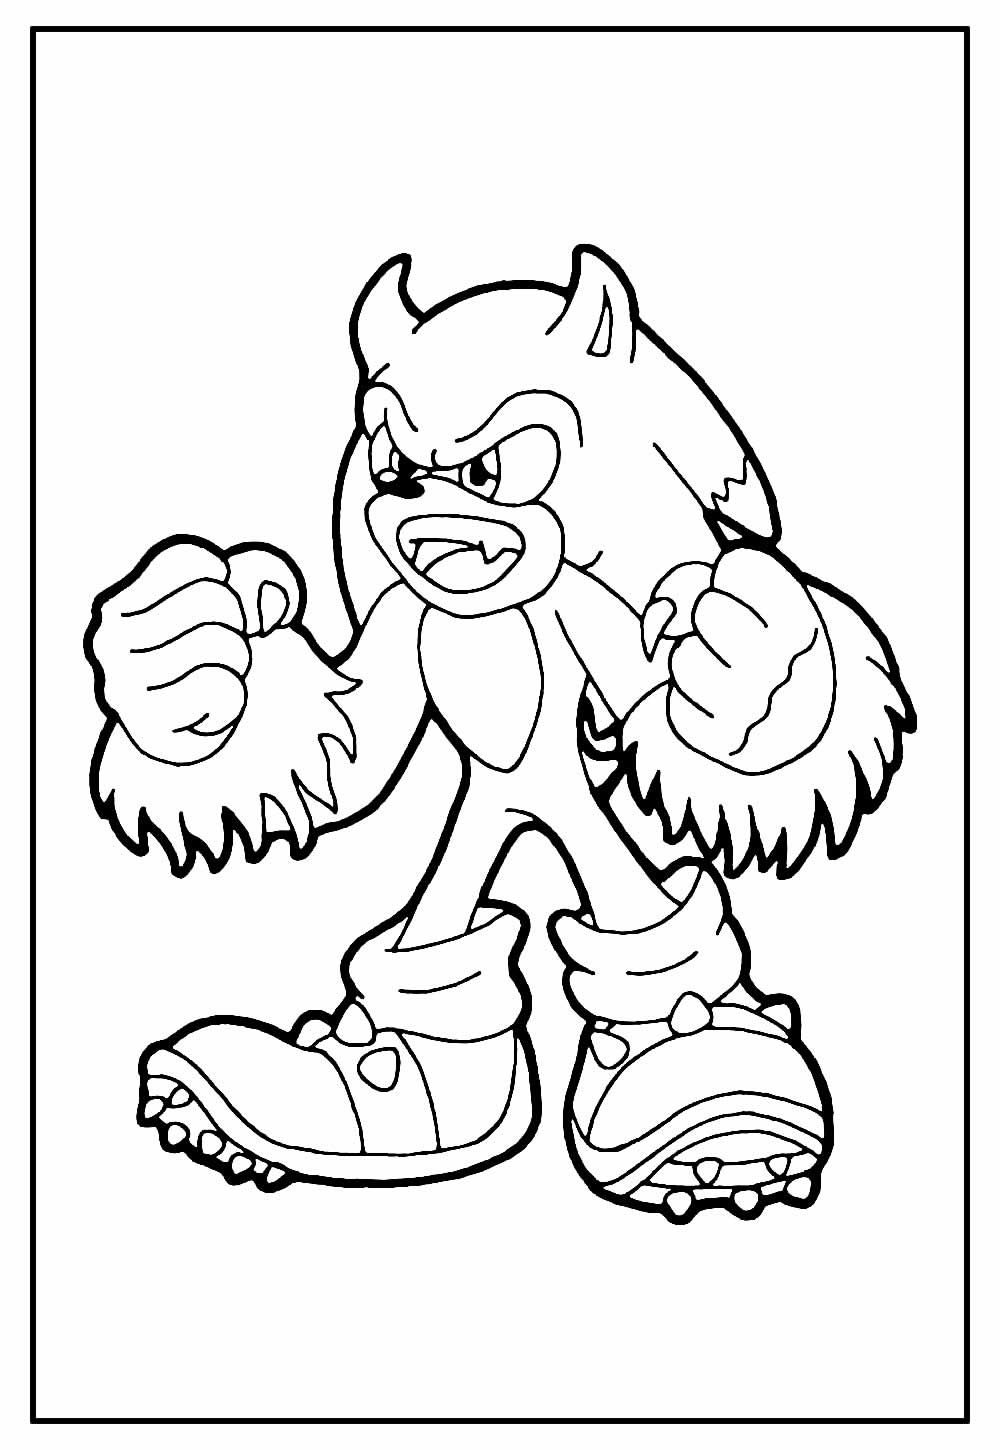 Desenhos de Sonic para colorir - Páginas de colorir imprimíveis